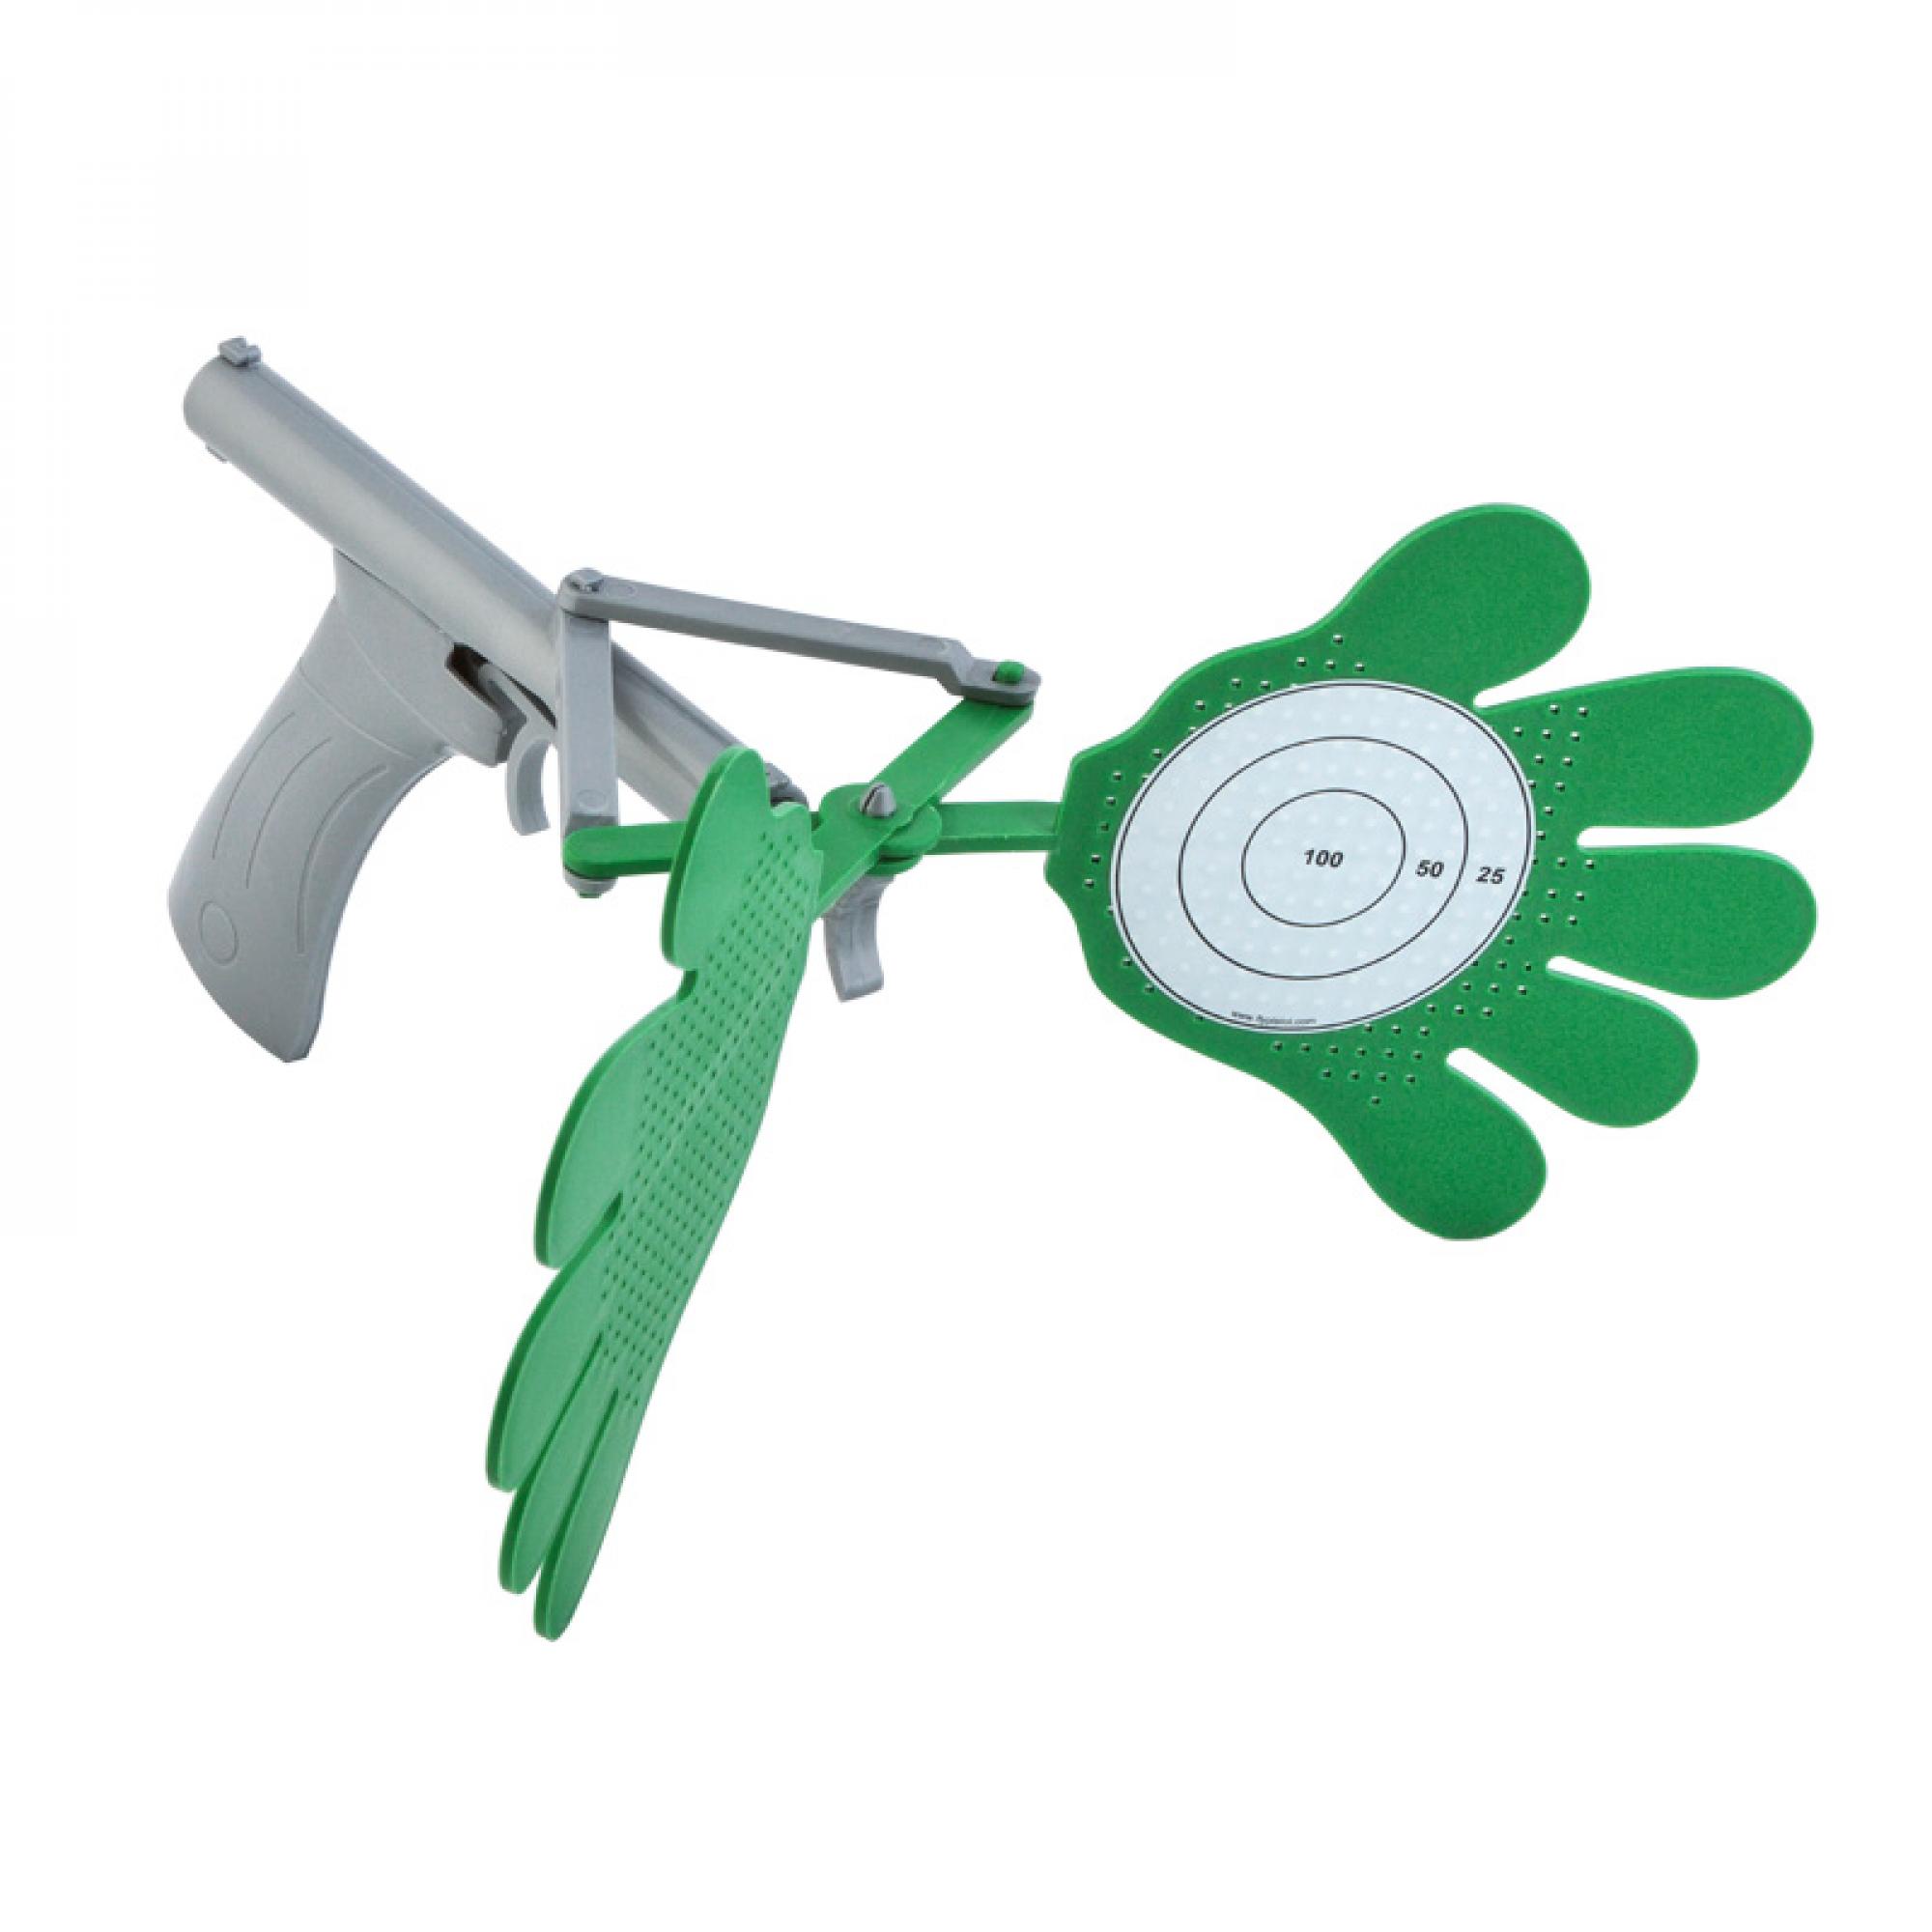 Пистолет-ладошки "Clap", цвет зеленый с серебром